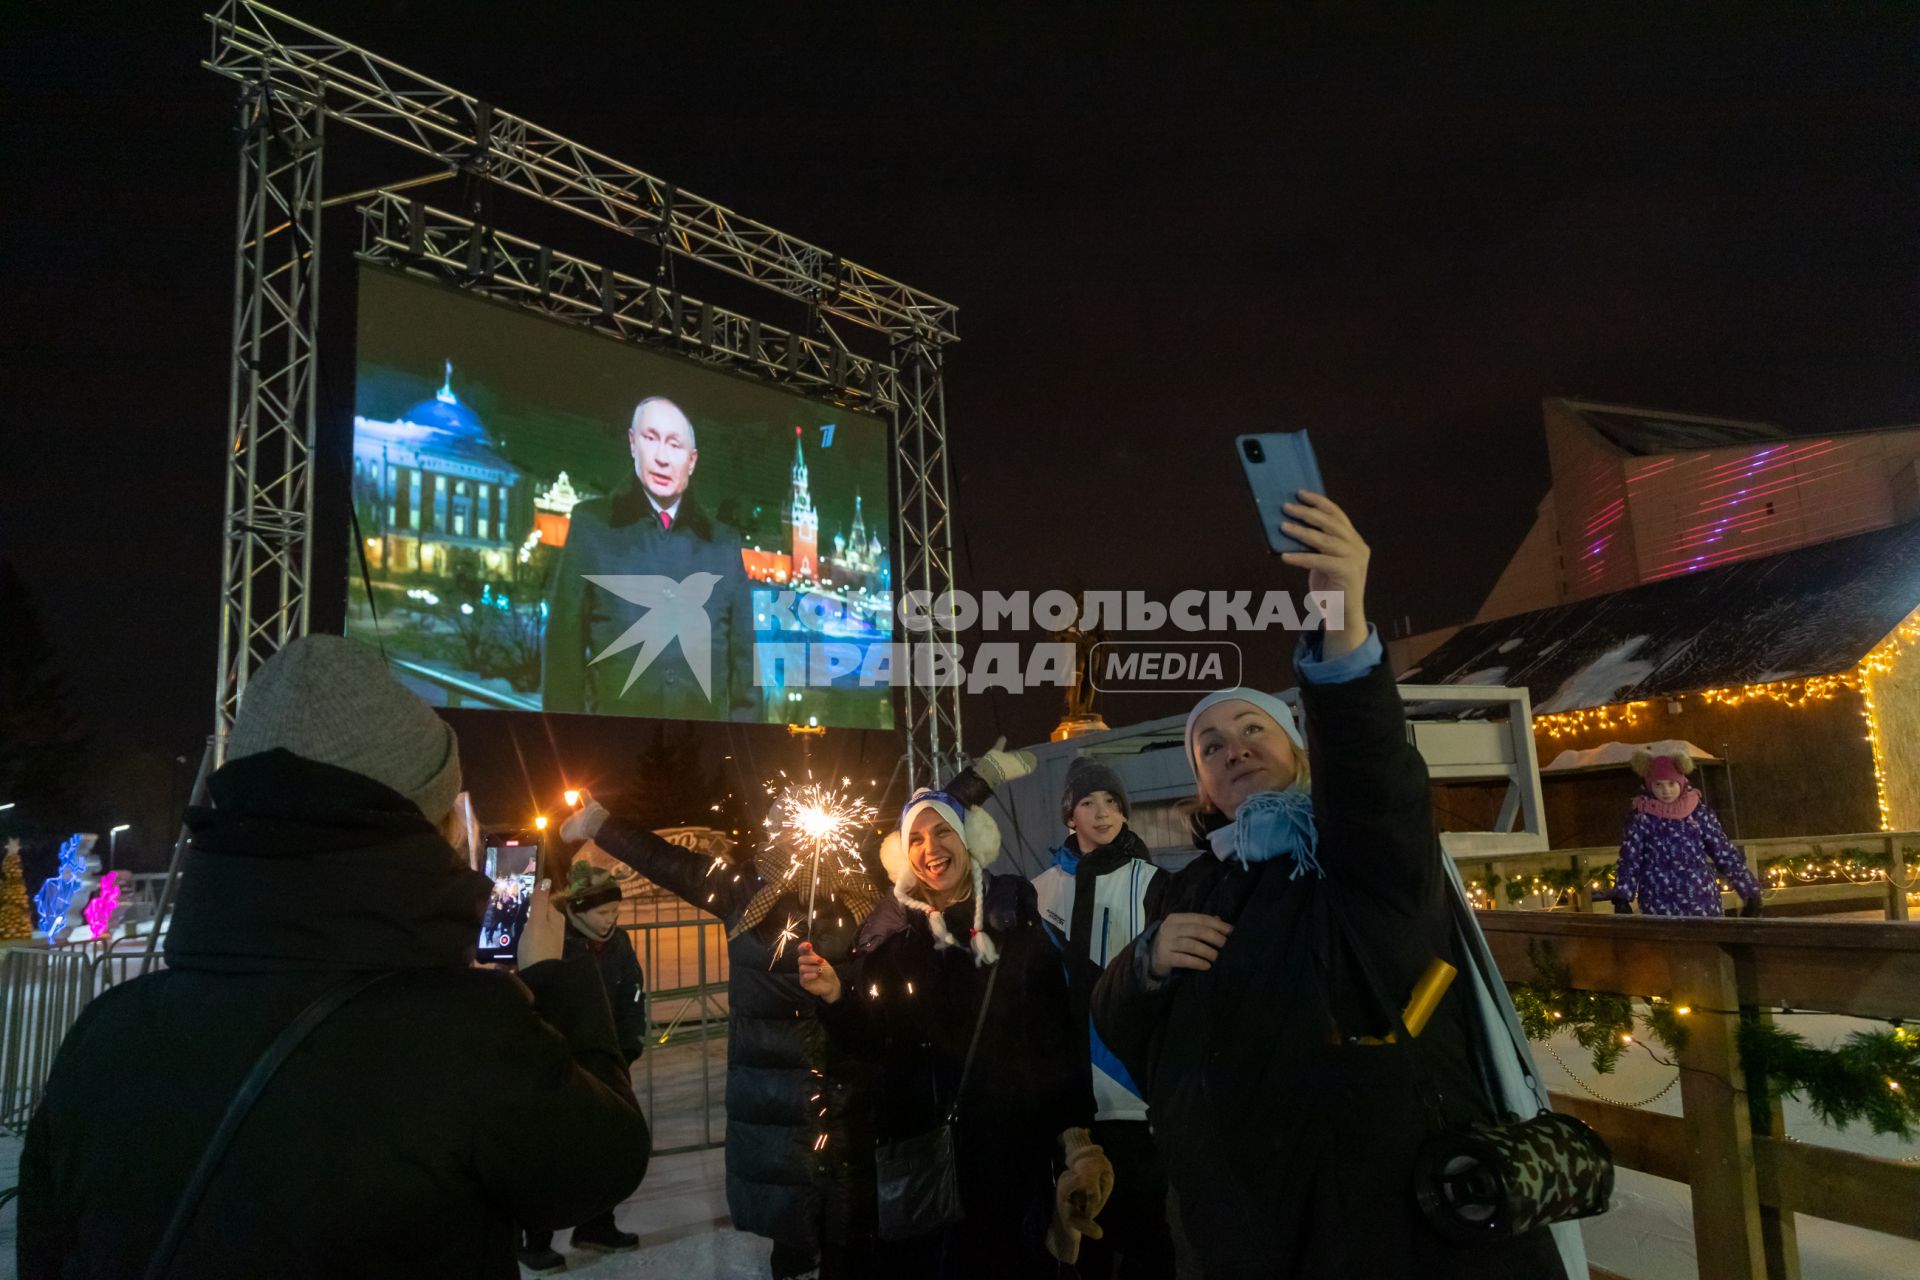 Красноярск. Люди смотрят трансляцию новогоднего обращения президента РФ Владимира Путина во время празднования Нового 2022 года.